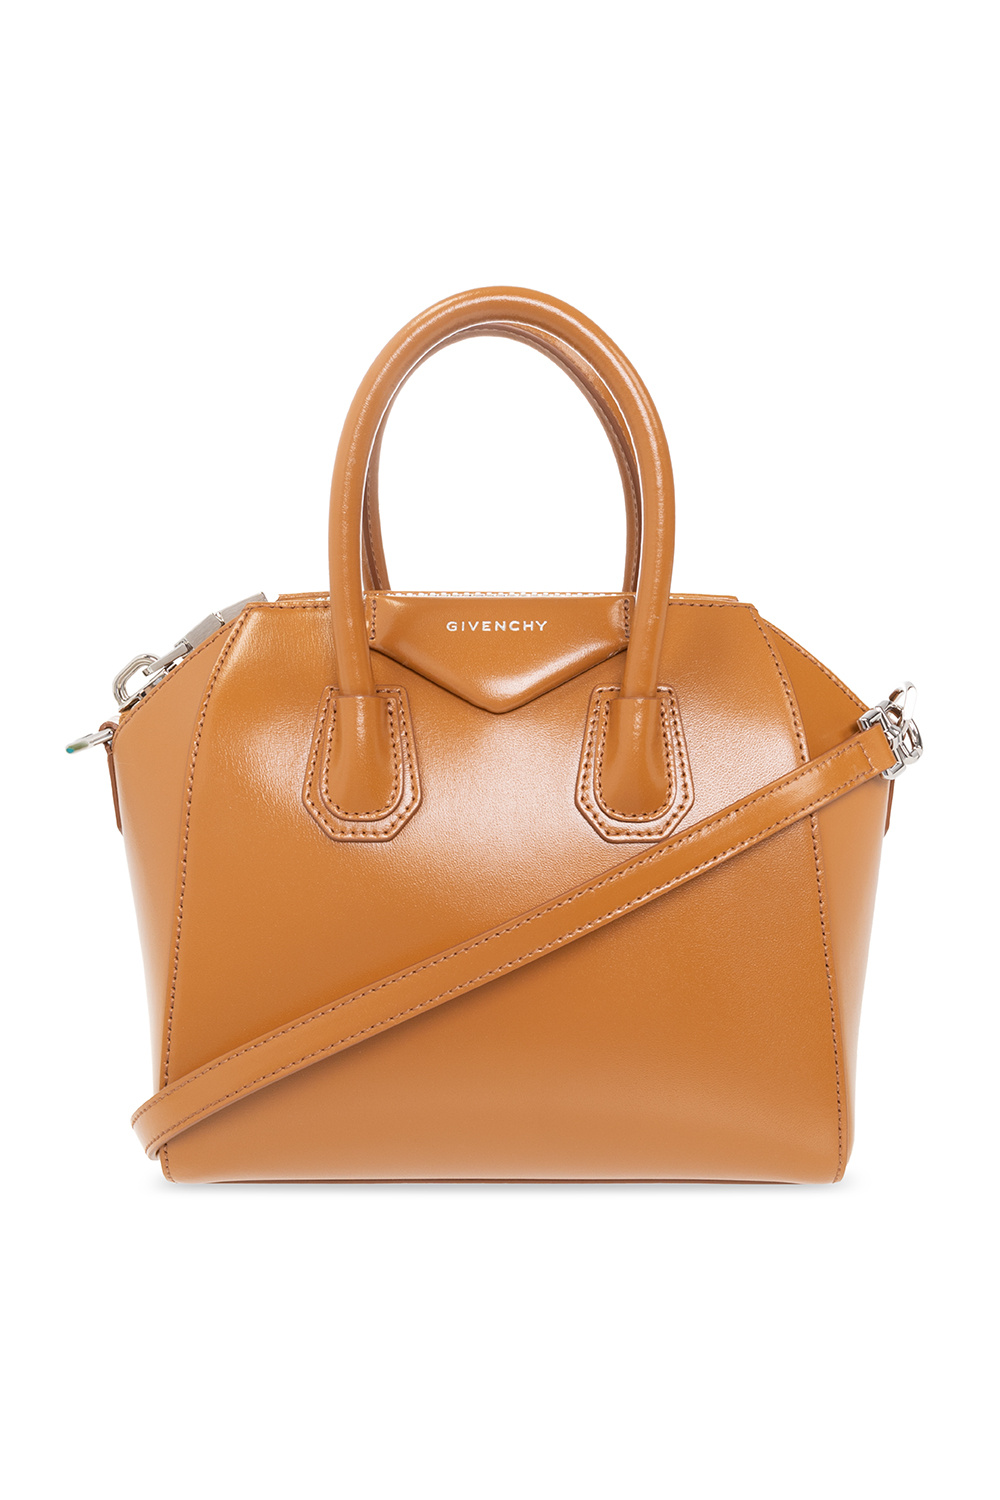 Ariana Grande handbag 53 x 31 x 10 cm